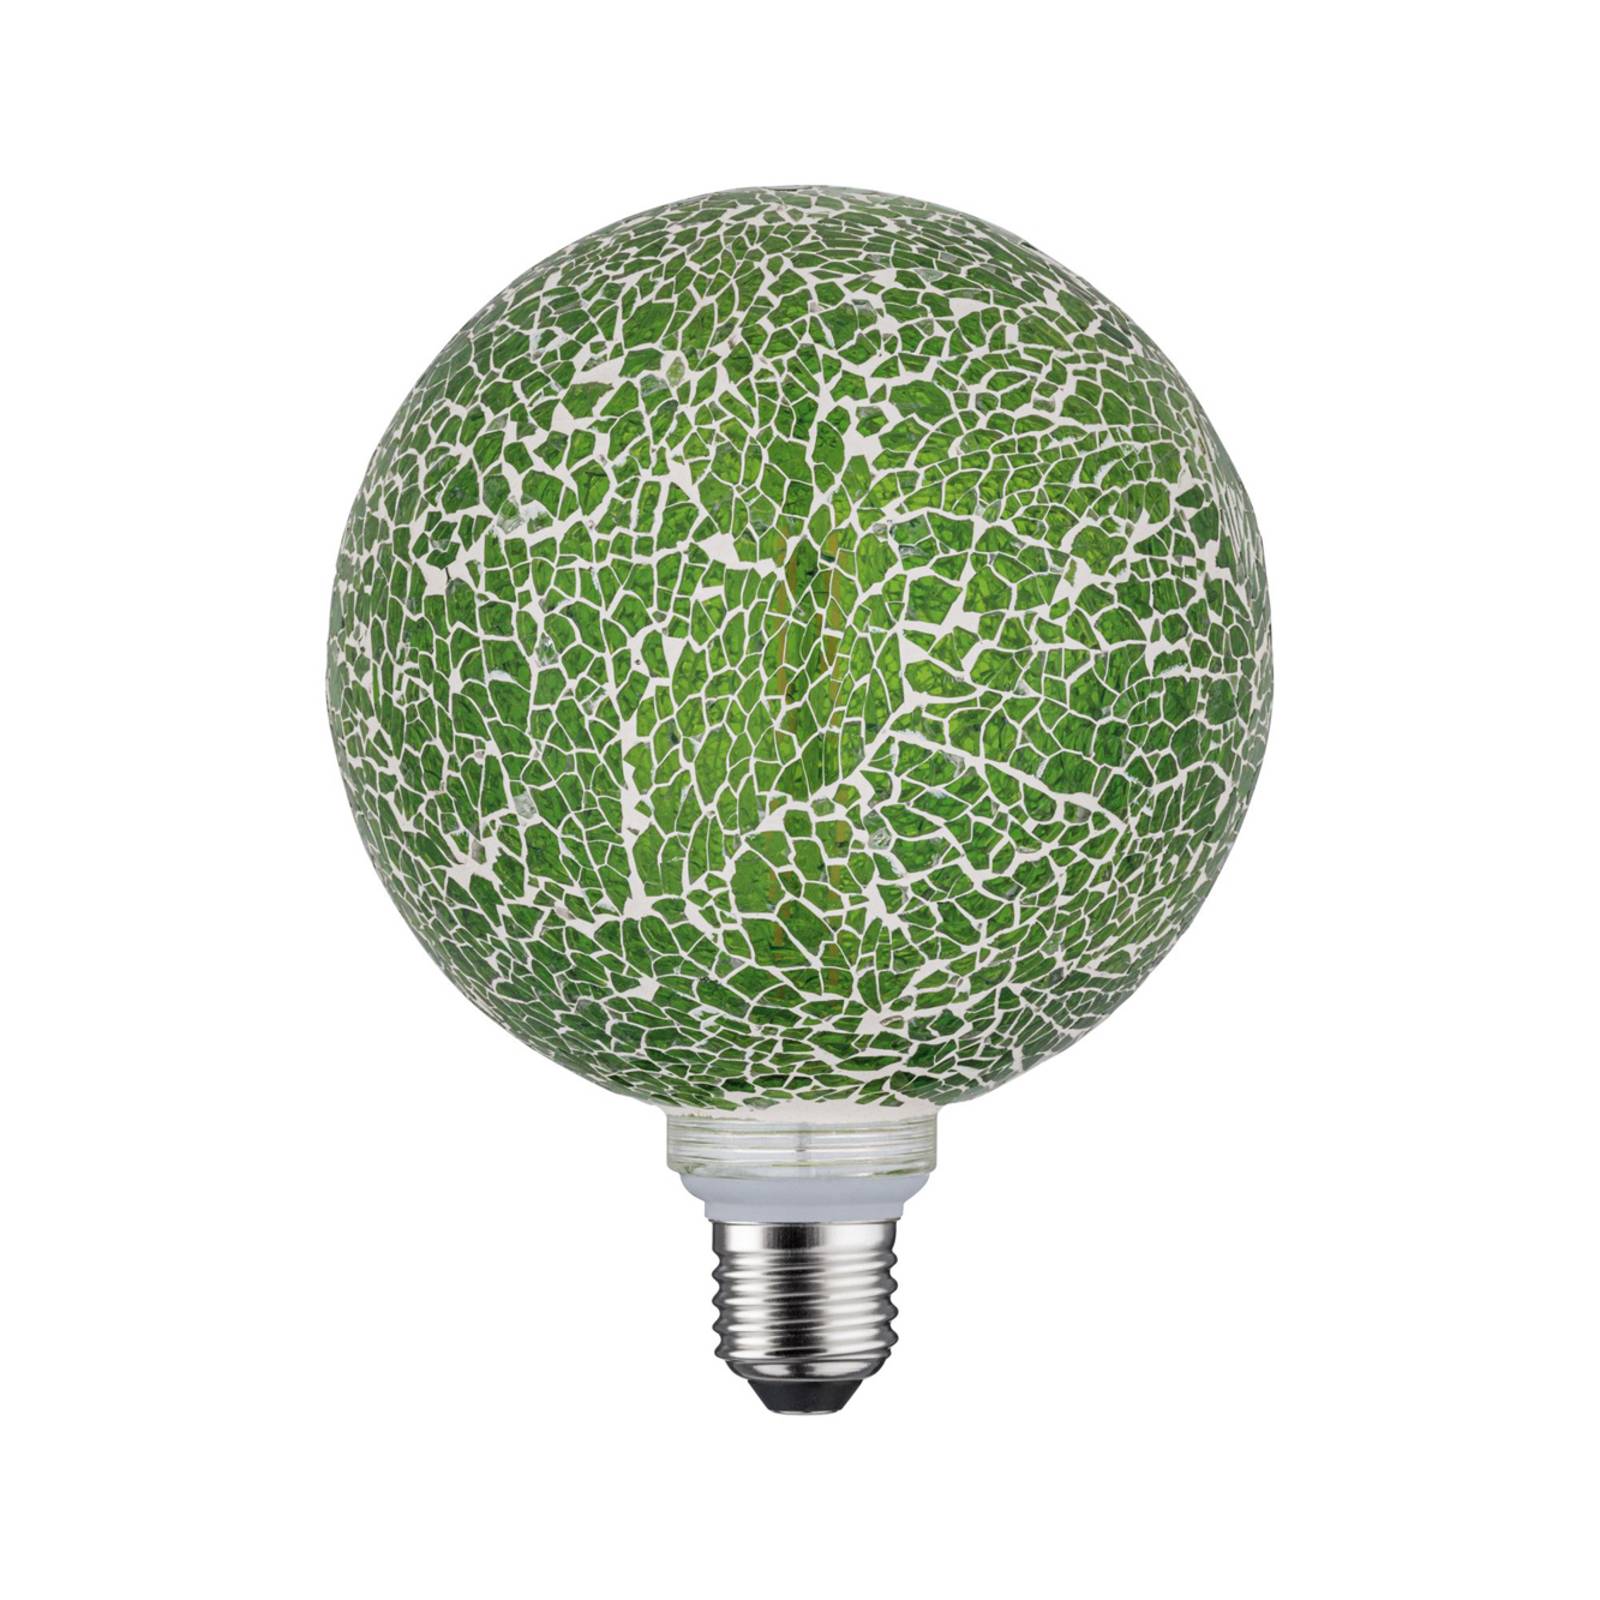 Paulmann E27 LED gömb izzó 5W Miracle Mosaic zöld